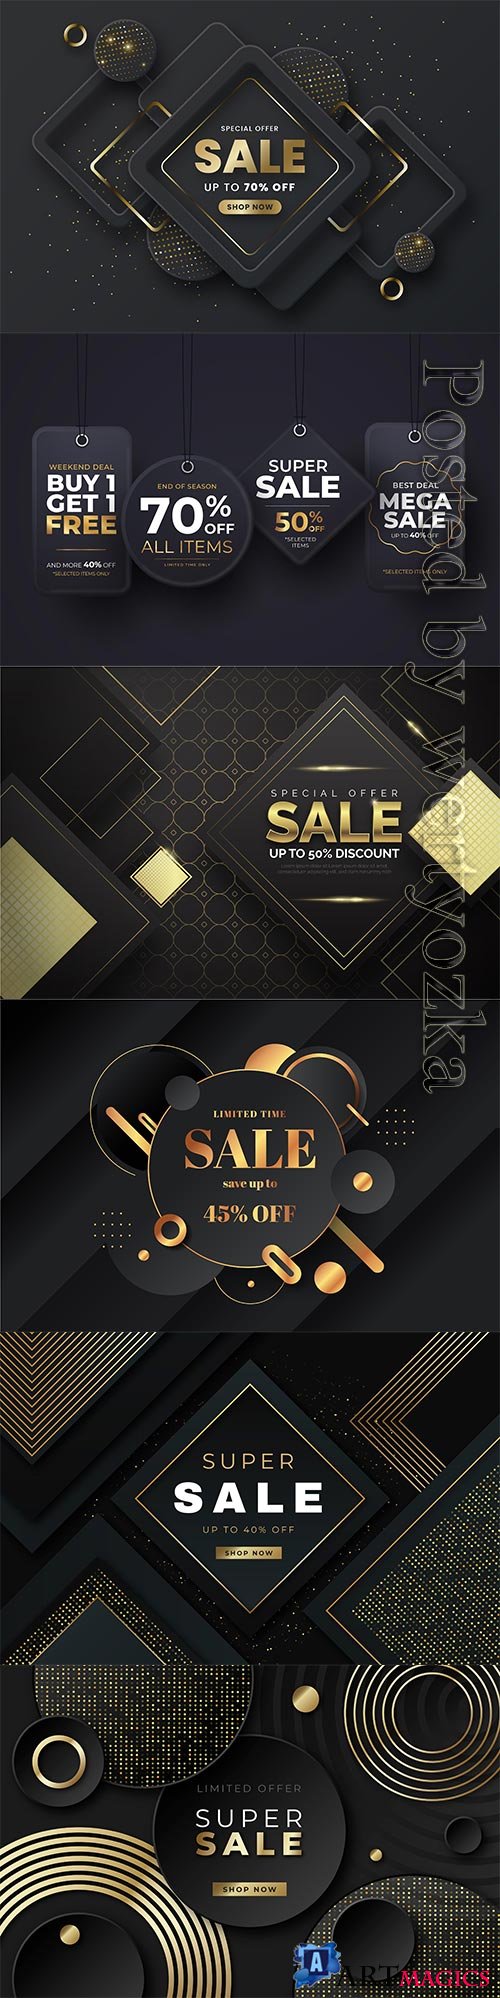 Luxury sale wallpaper with golden vector elements